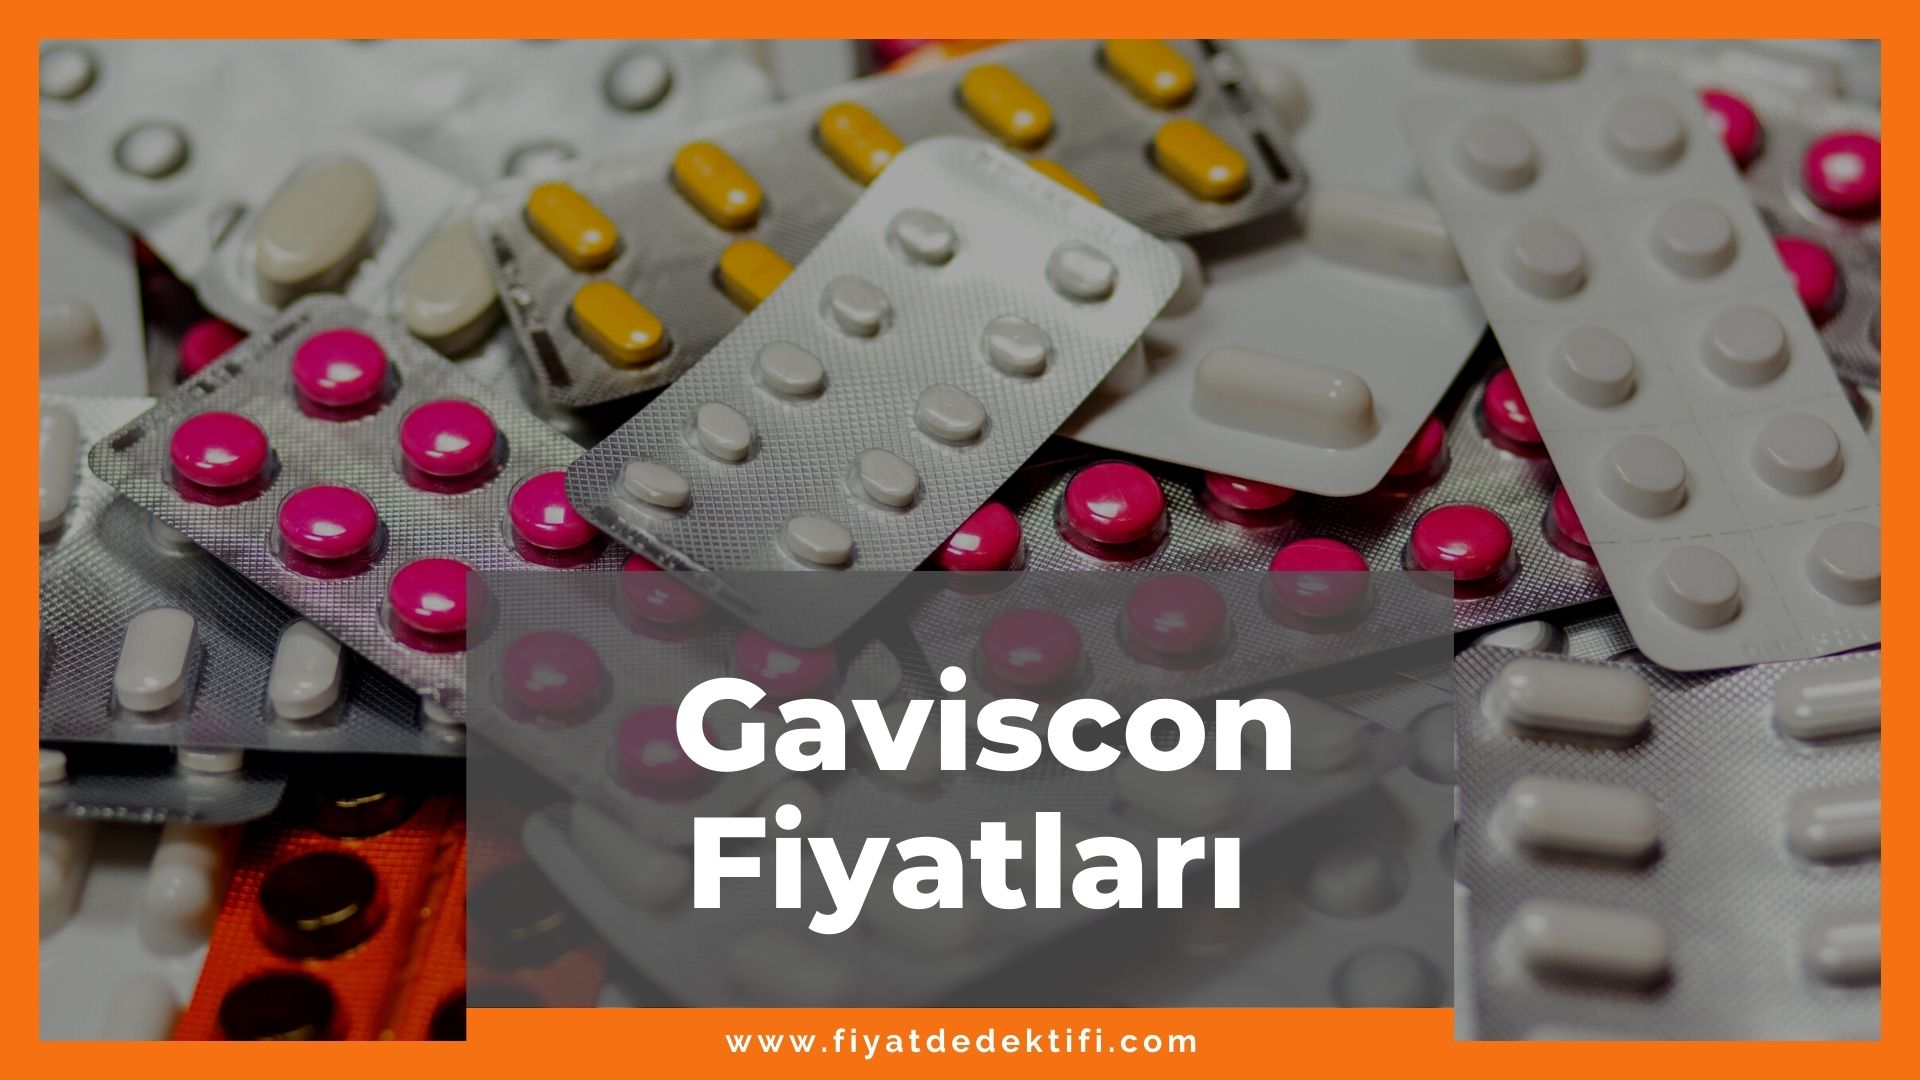 Gaviscon Fiyat 2021, Gaviscon Fiyatı, Gaviscon Şurup Fiyatı, gaviscon zamlı fiyatı ne kadar, gaviscon ne işe yarar zamlandı mı